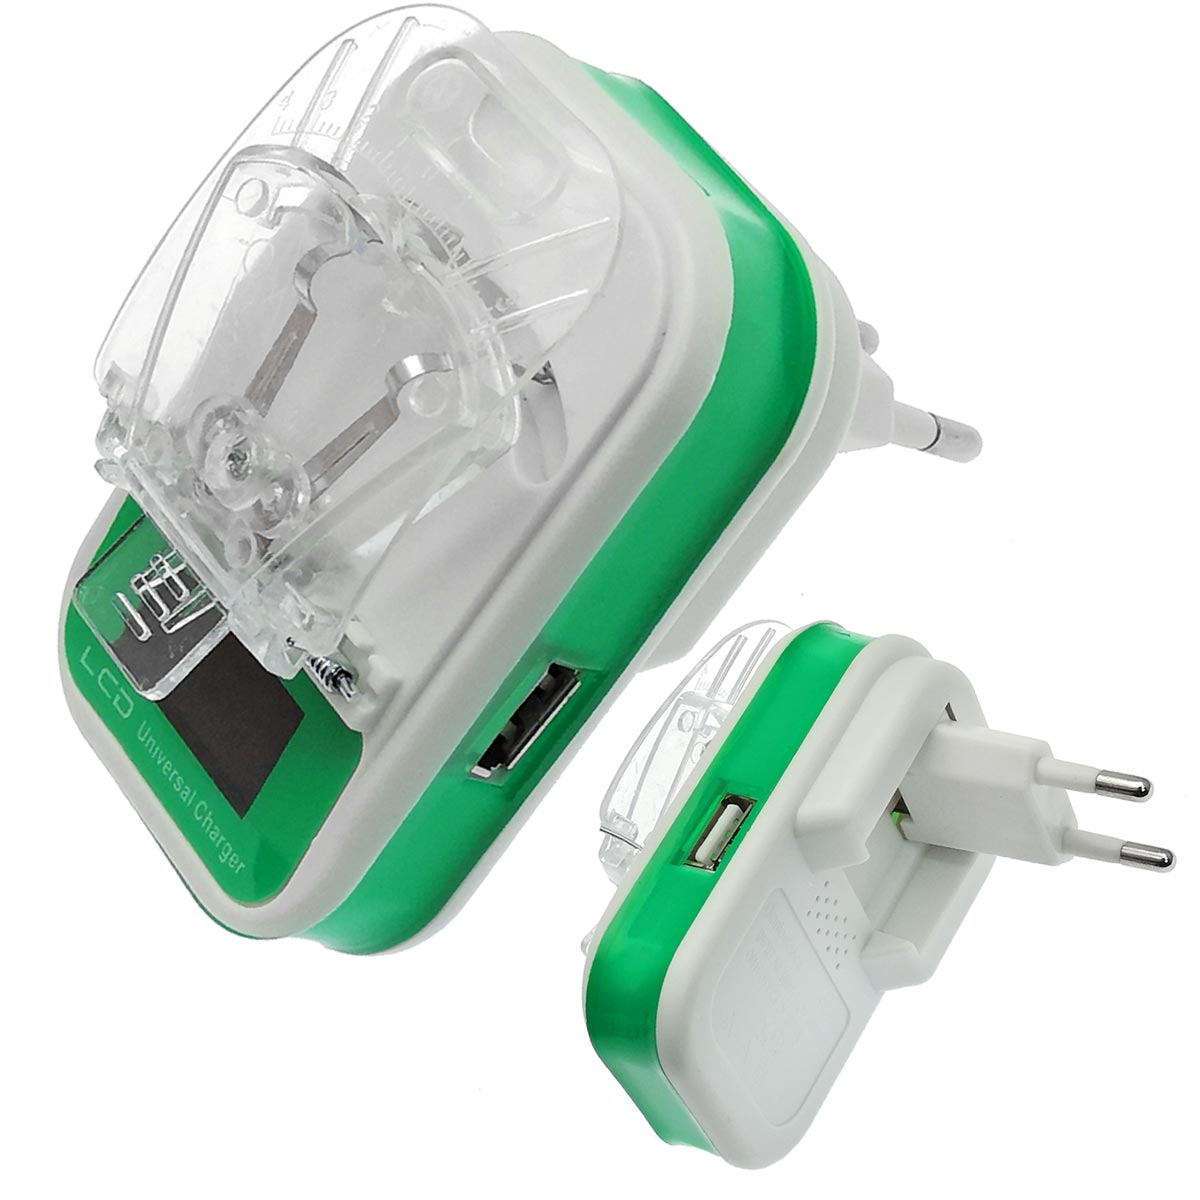 УСЗУ (универсальное сетевое зарядное устройство) LP-120 Лягушка с LCD дисплеем и USB выходом 5V-1.2A классическая, цвет зелено белый